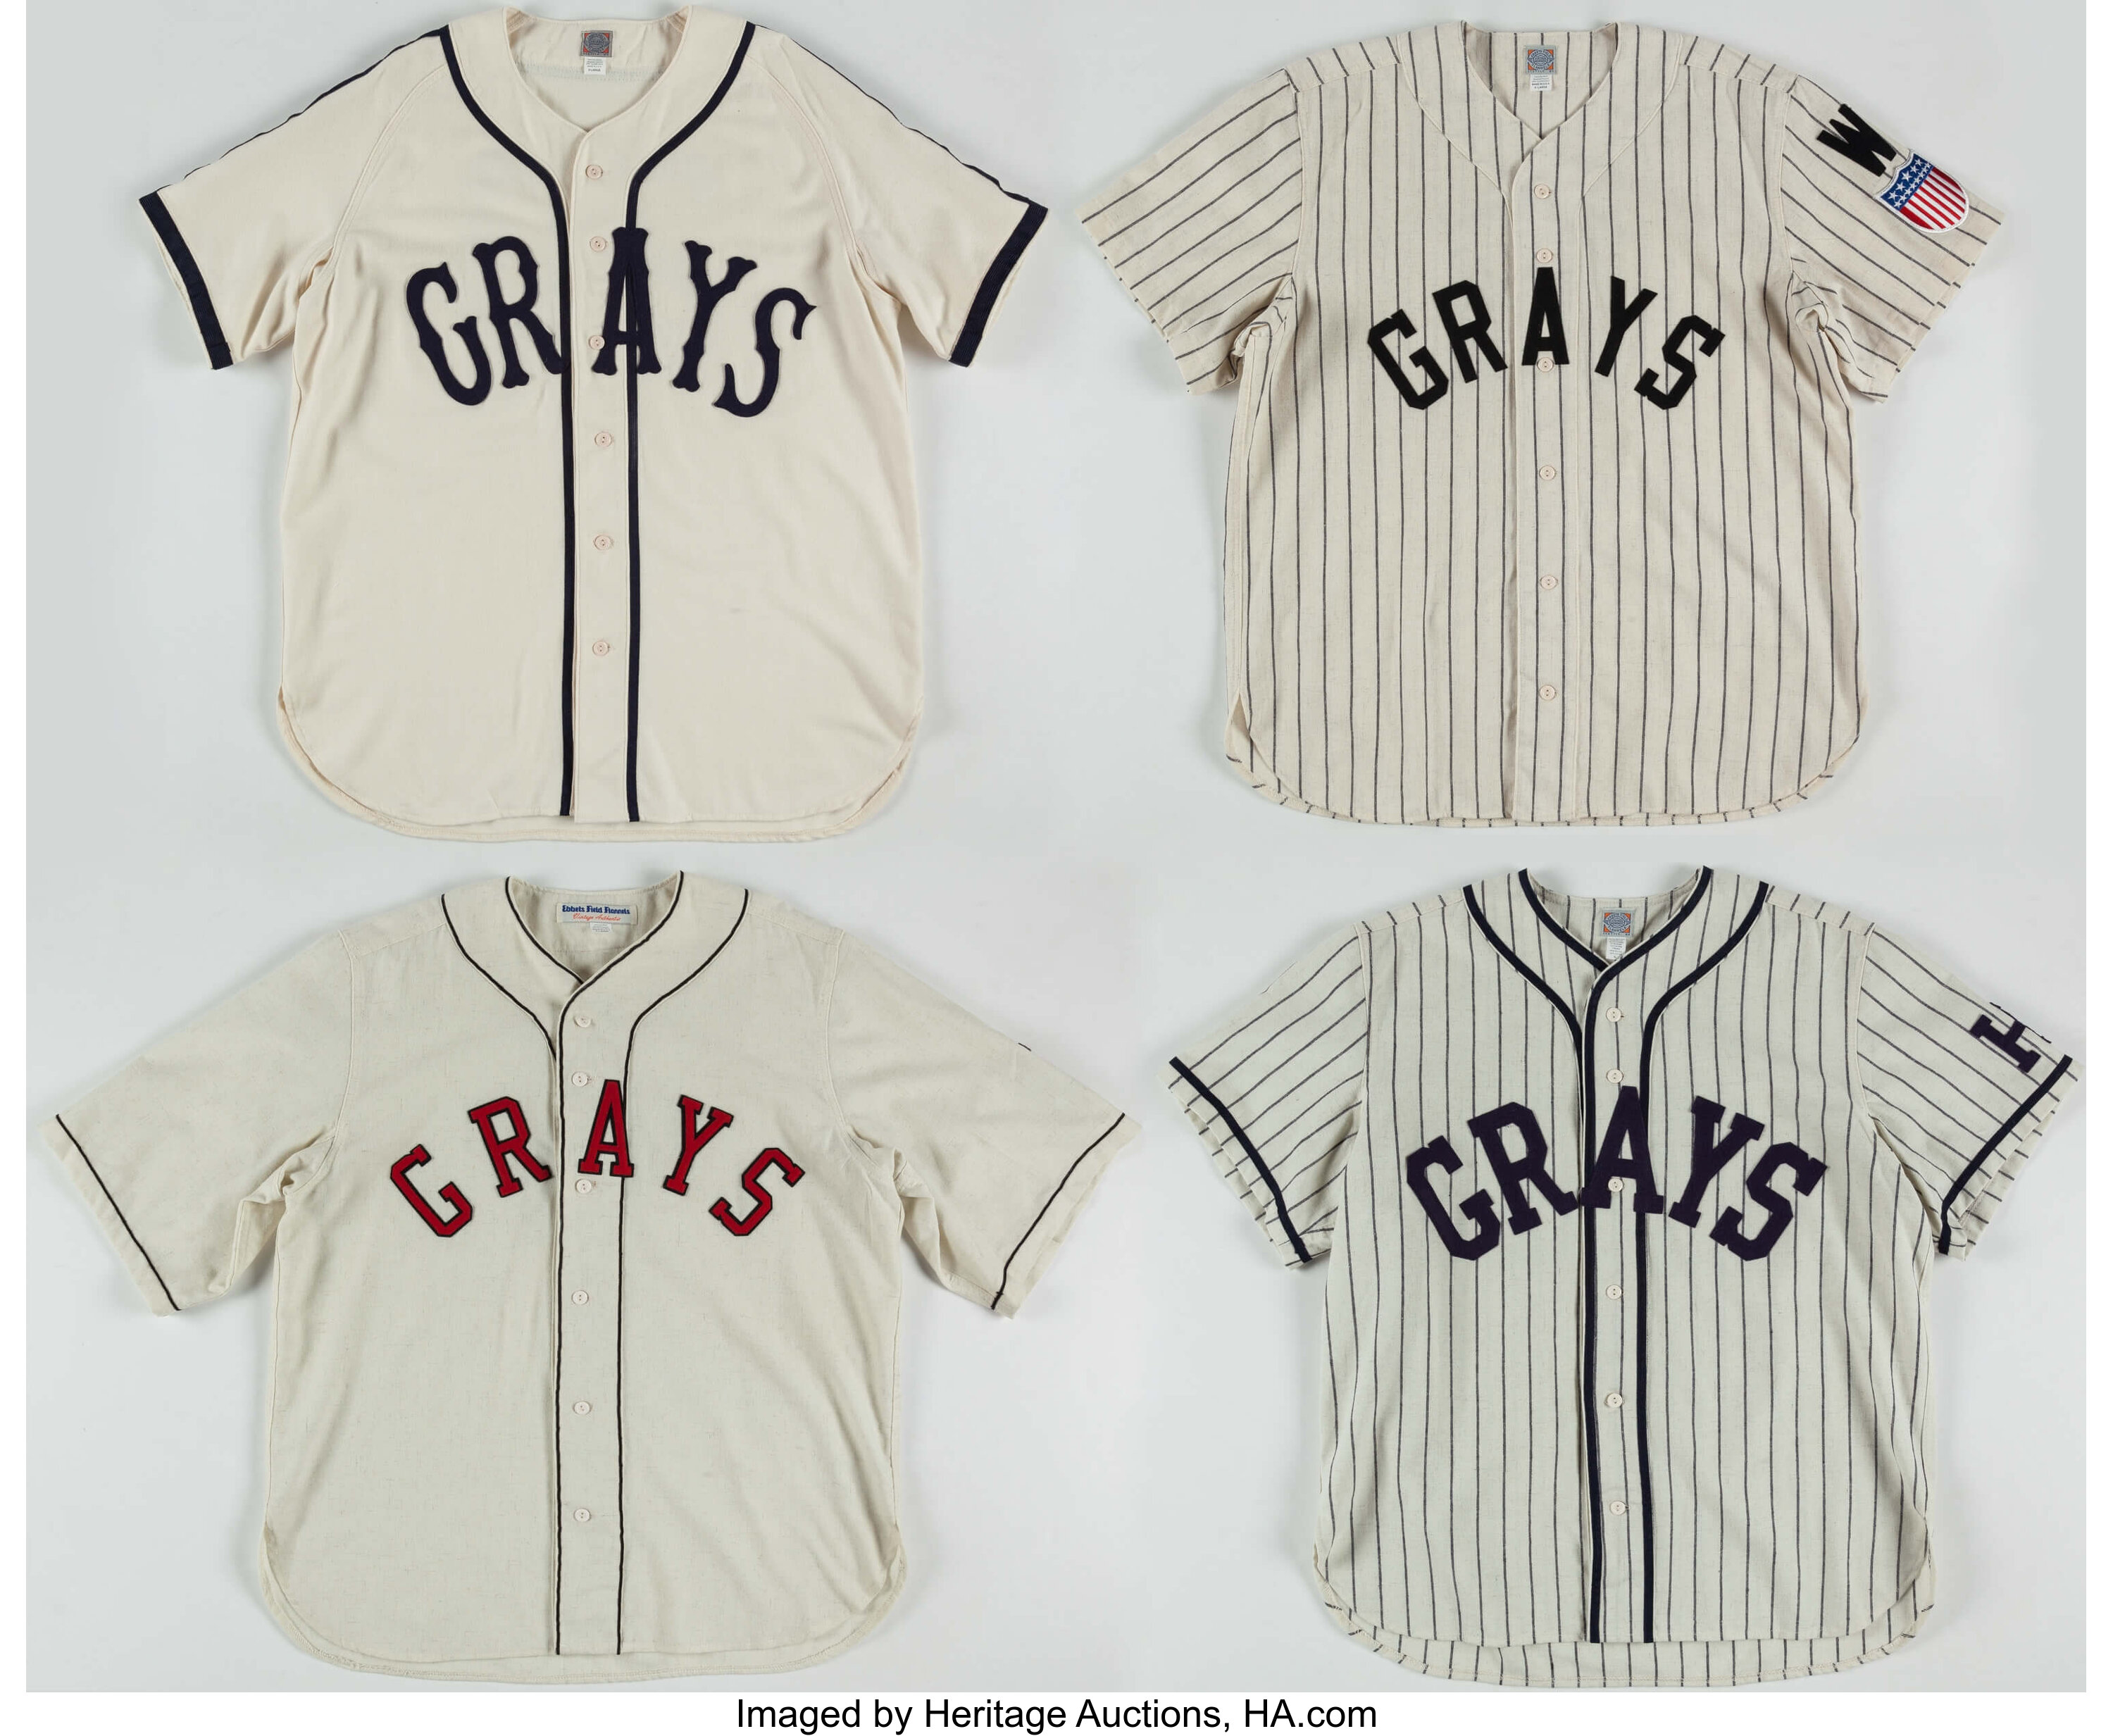 Top Ten Negro League Jerseys – Ebbets Field Flannels